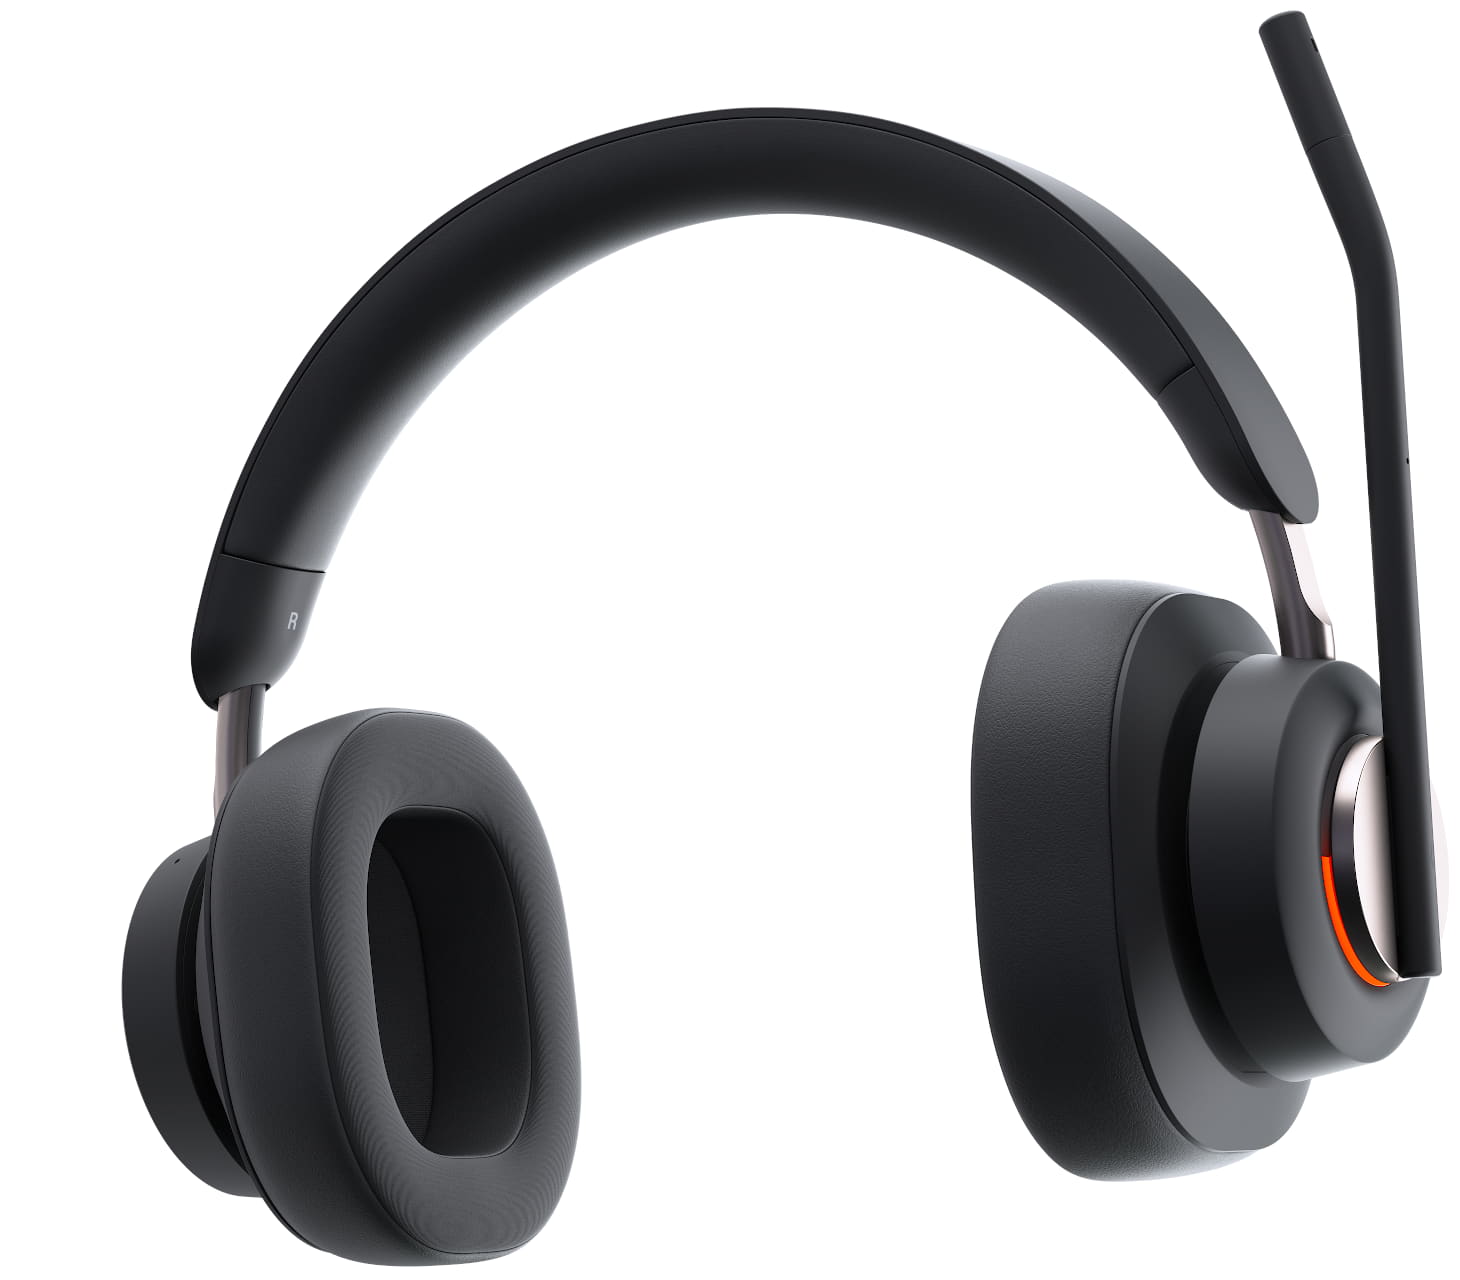 Närbild framifrån på Kensington H3000 Bluetooth Over-ear-headset med upptagetlampan tänd och mikrofonen i vänd för mute-position
                                    